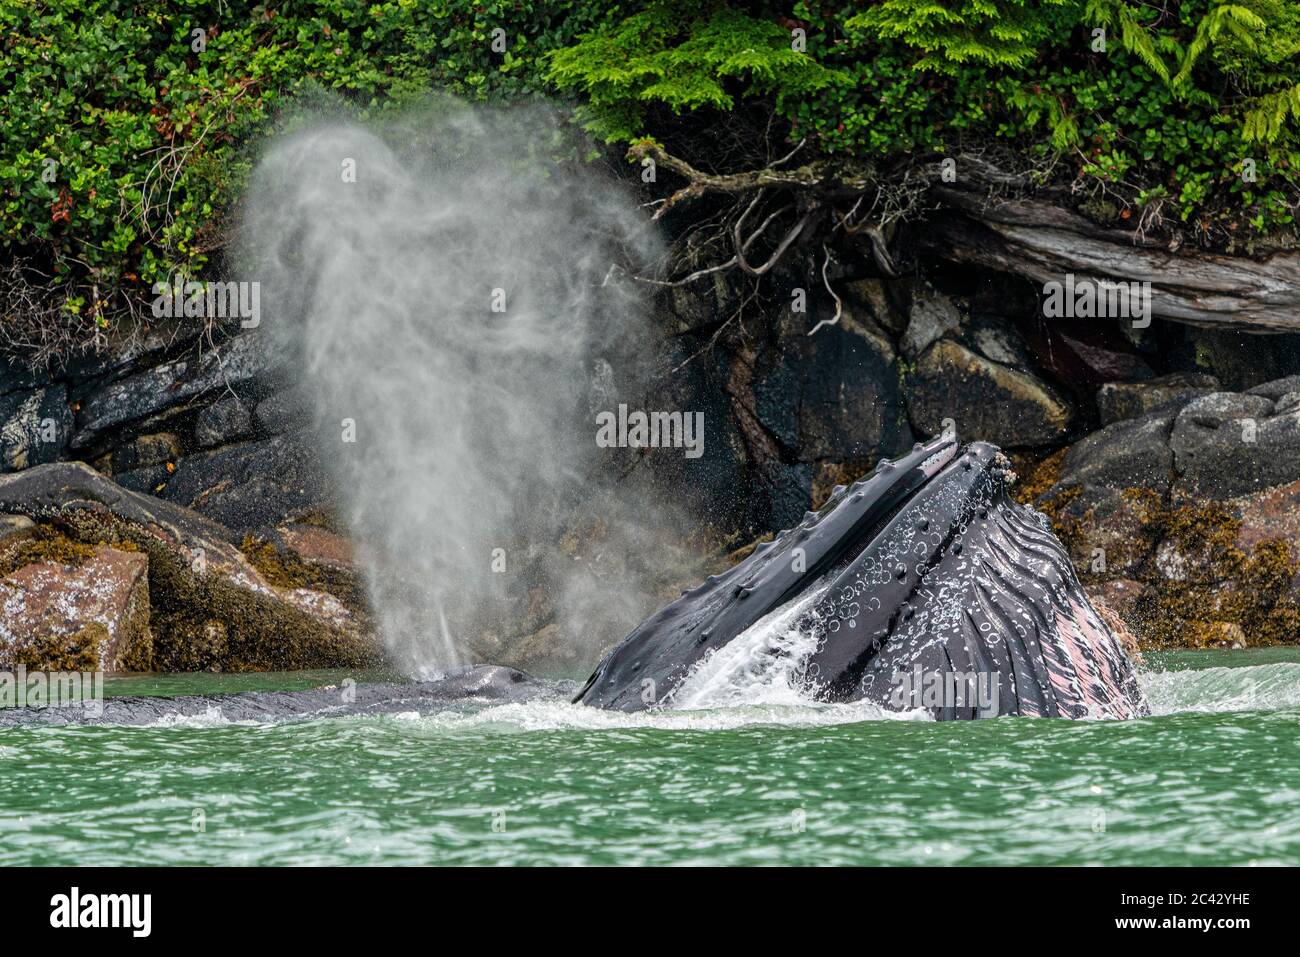 Deux baleines à bosse, maman et son veau, se nourrissant près du rivage le long de la côte de Knight Inlet, territoire des Premières nations, Colombie-Britannique, Canada. Banque D'Images